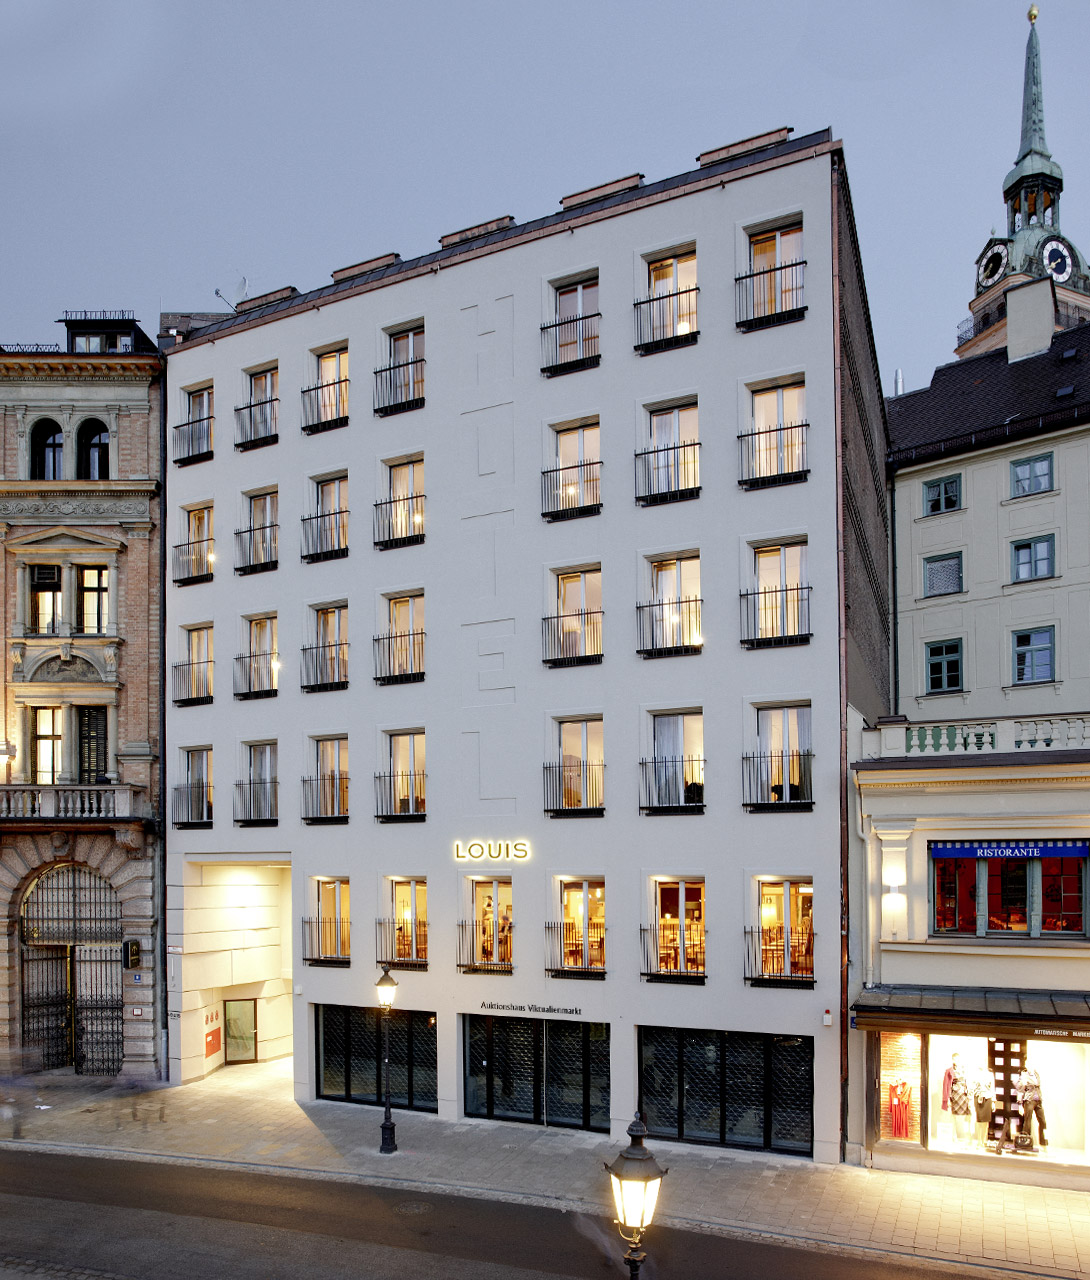 Louis Hotel Exterior in Munich